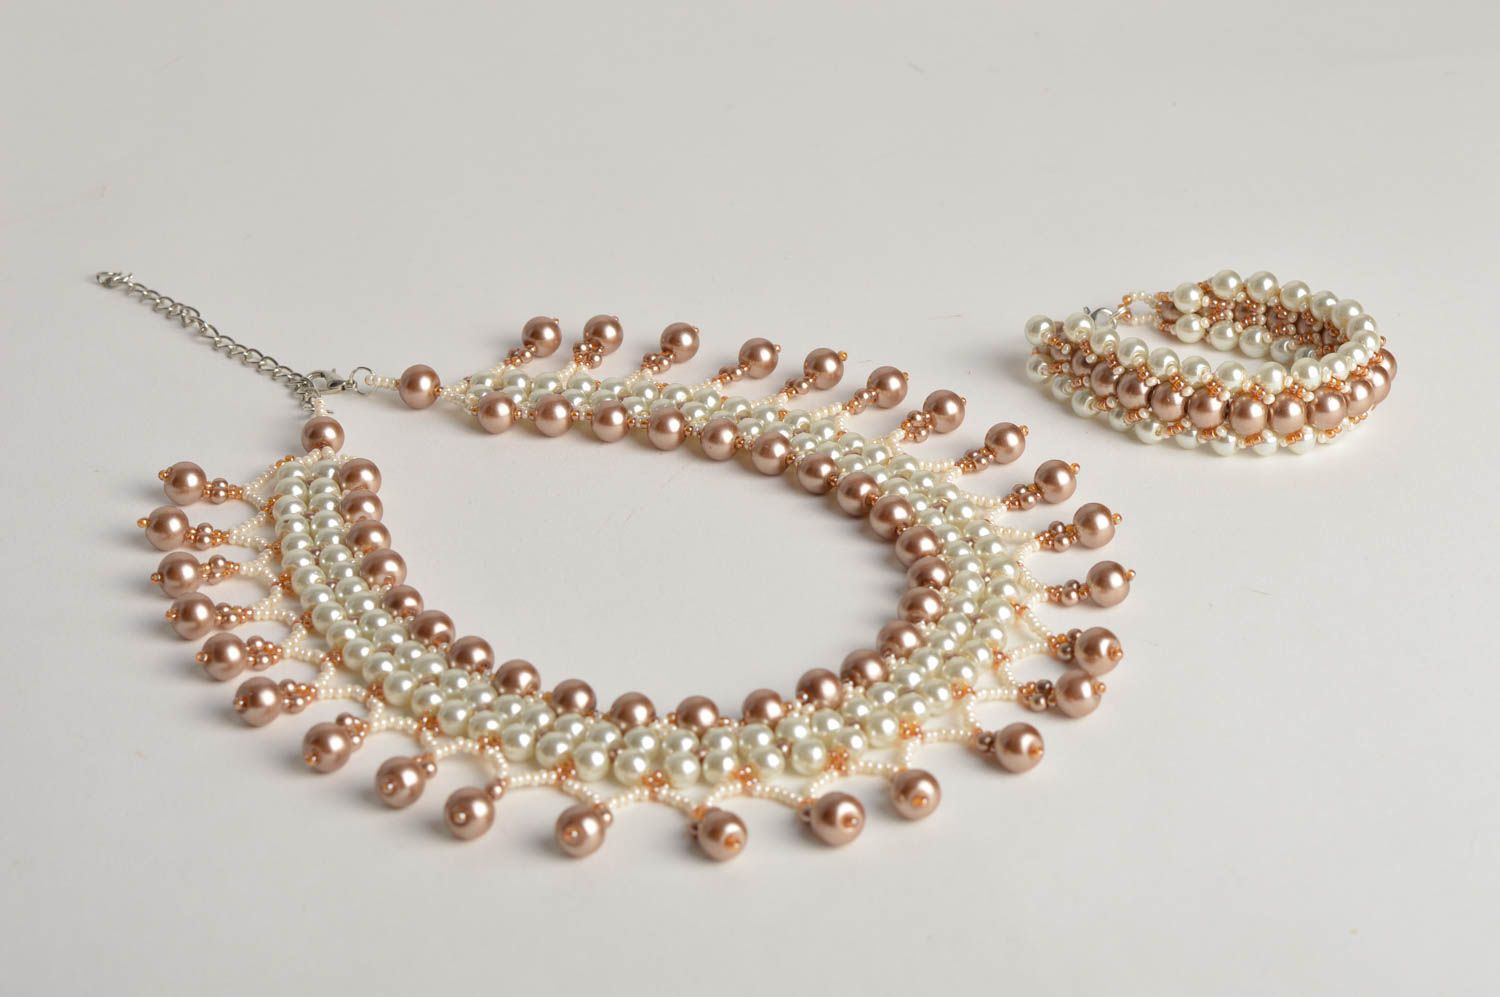 Handmade beaded jewelry set stylish elegant necklace elite wrist bracelet photo 2